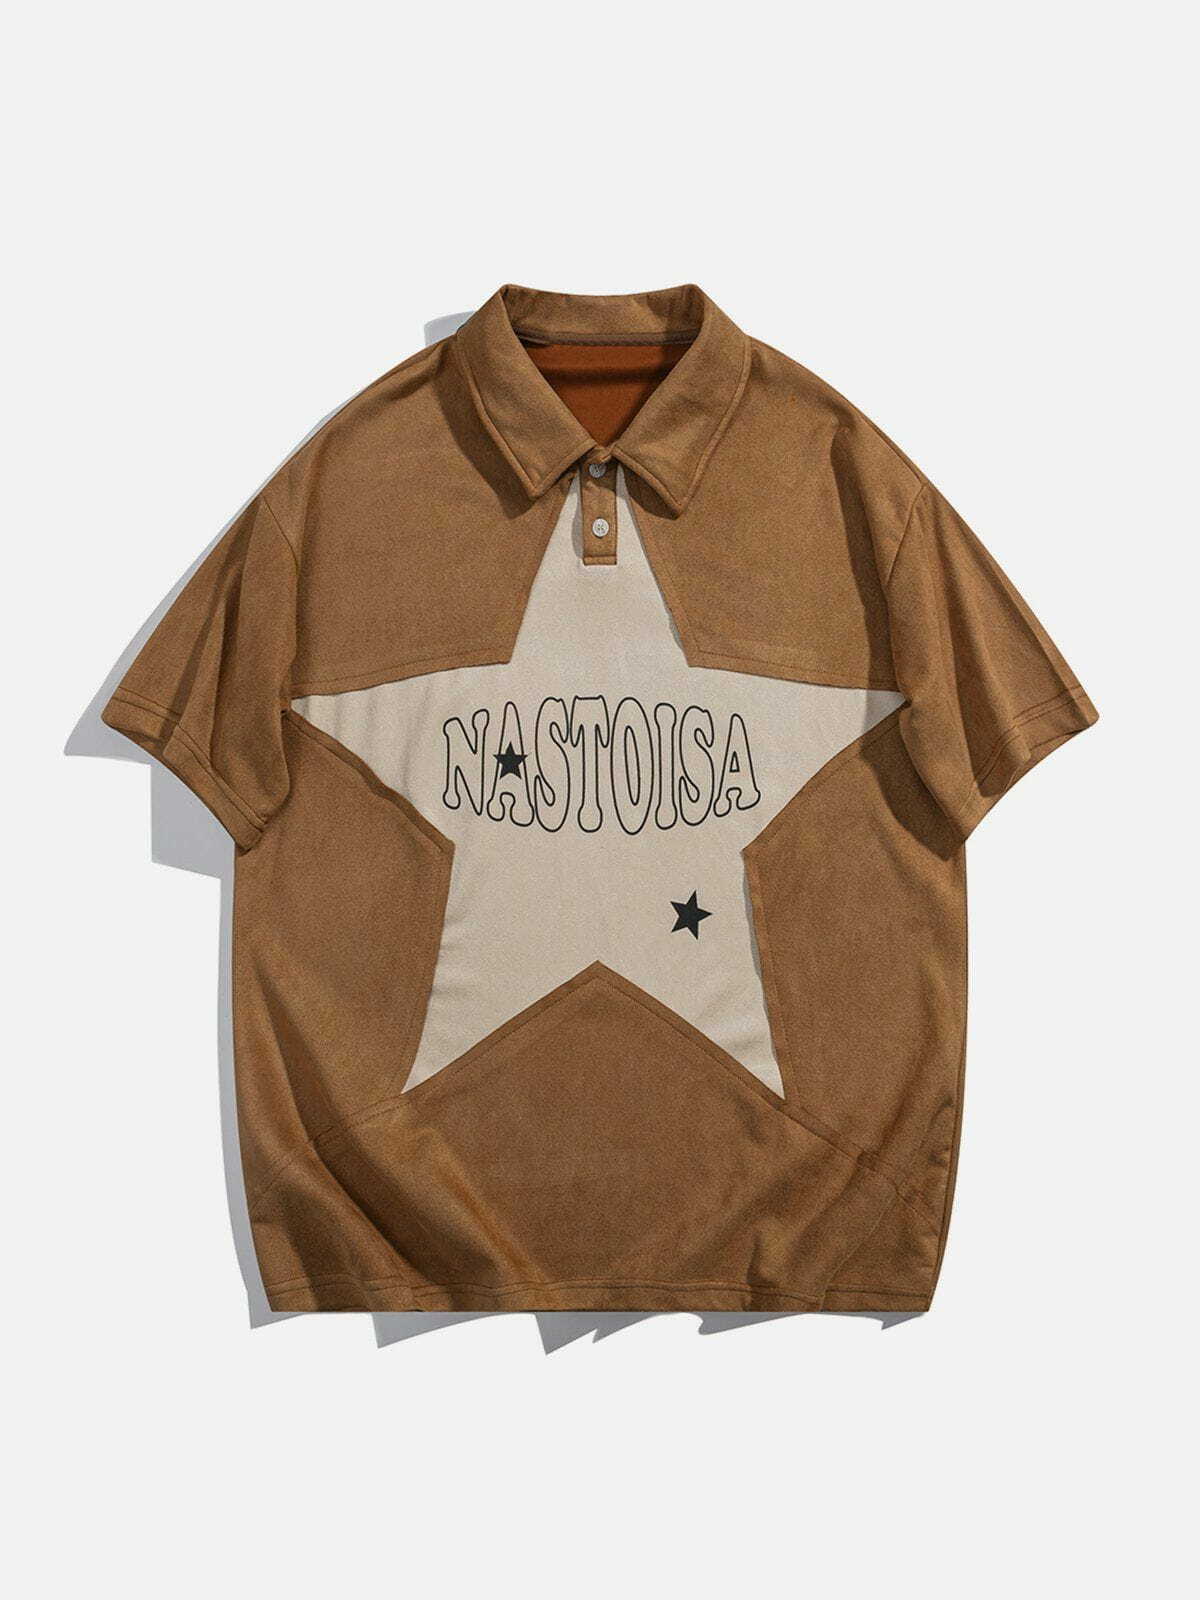 retro star polo tshirt edgy and vibrant y2k streetwear 6471